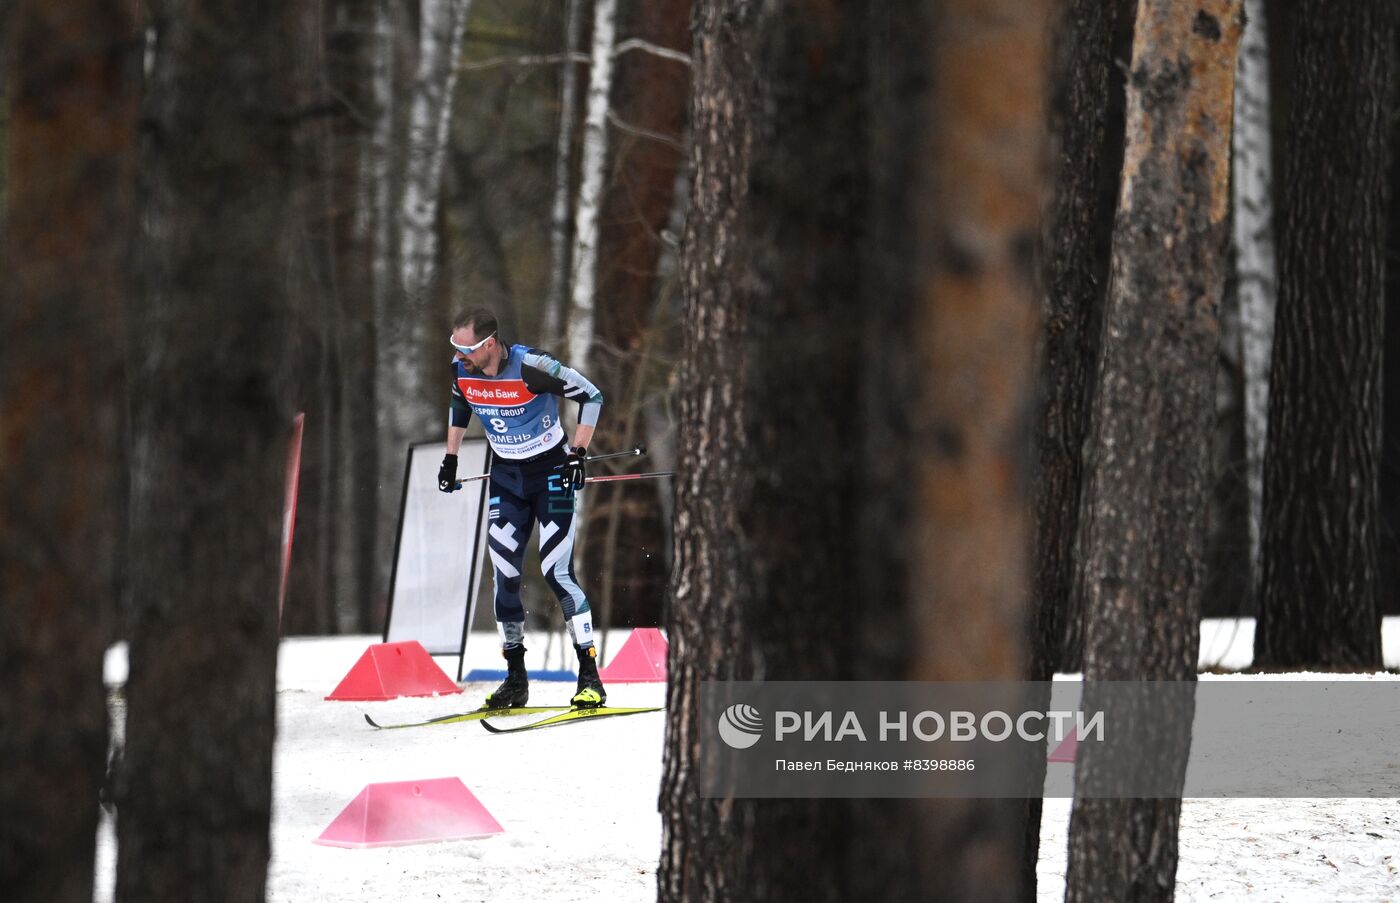 Лыжные гонки. Чемпионат России. Мужчины. Масс-старт